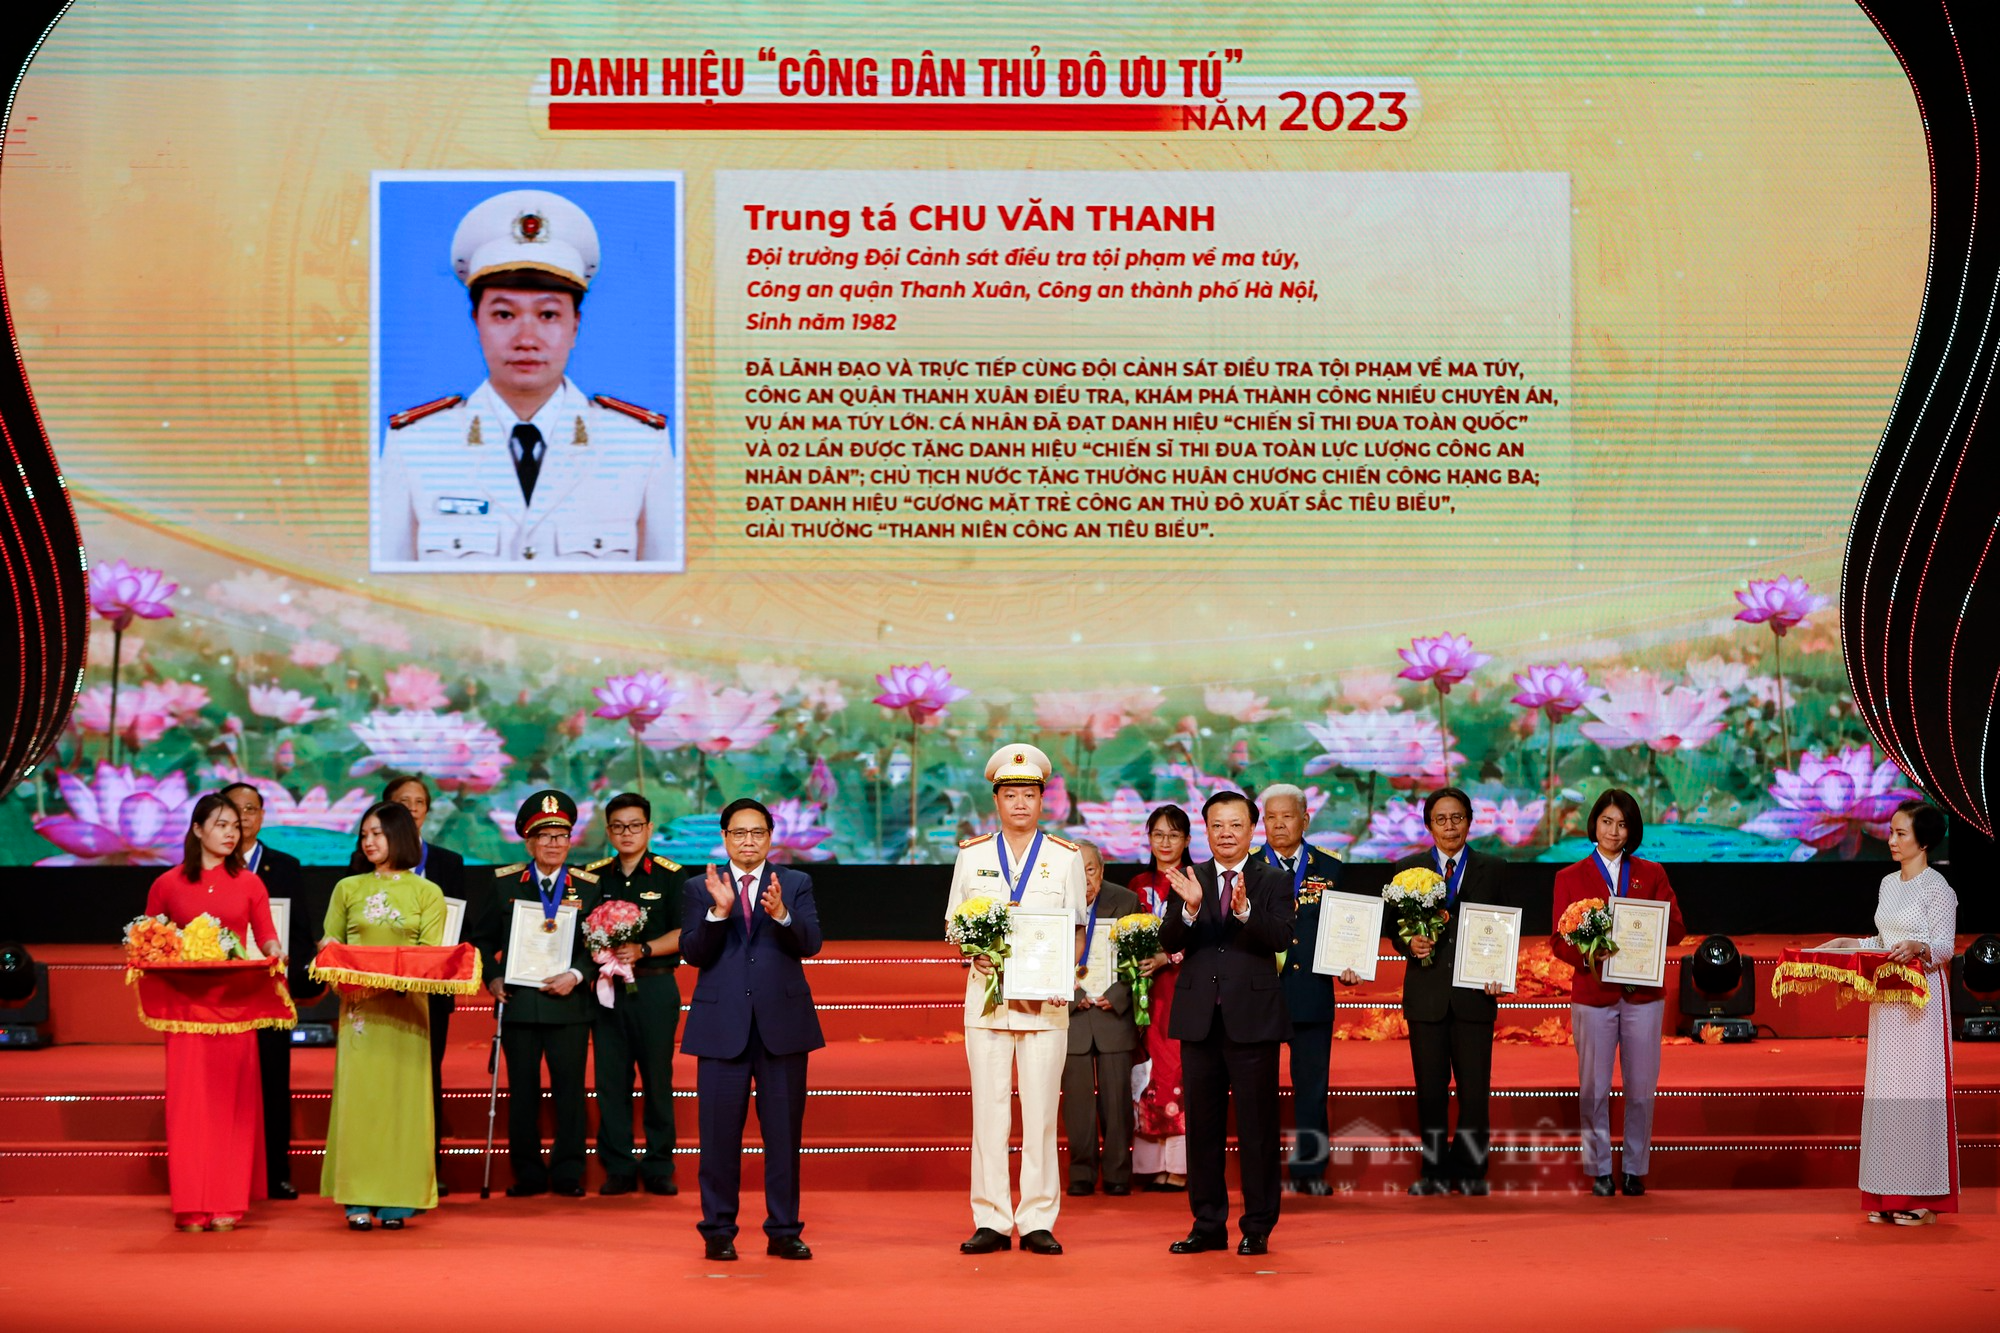 Hình ảnh Thủ tướng Phạm Minh Chính dự Hội nghị vinh danh Công dân Thủ đô Ưu tú năm 2023 - Ảnh 8.